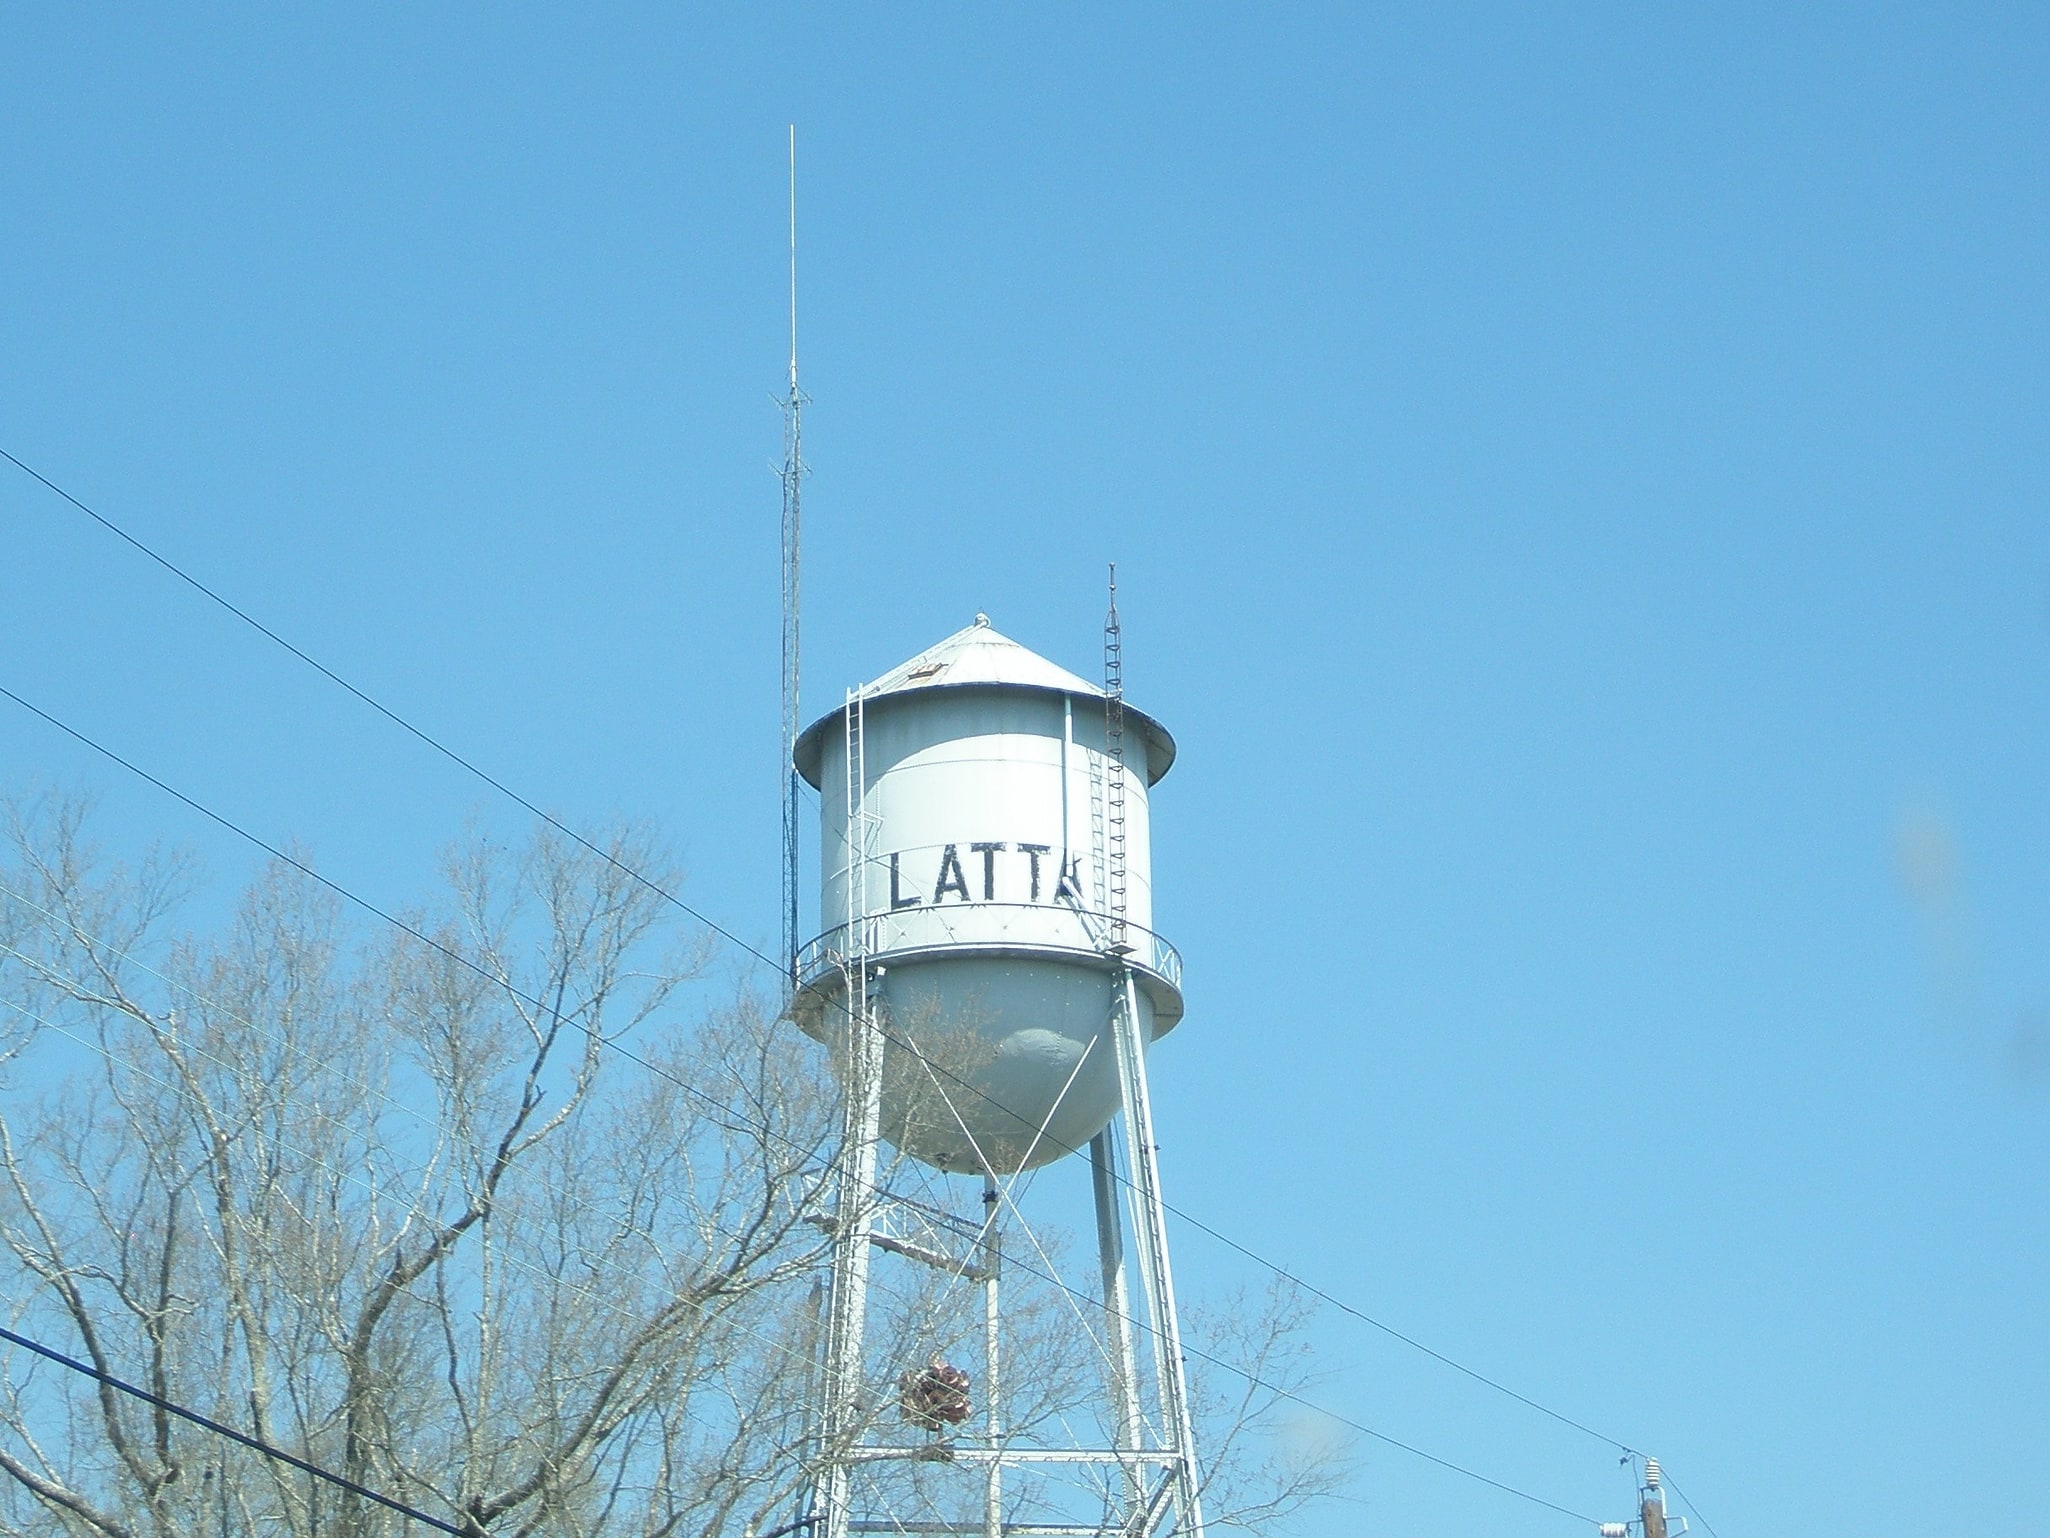 Latta, United States